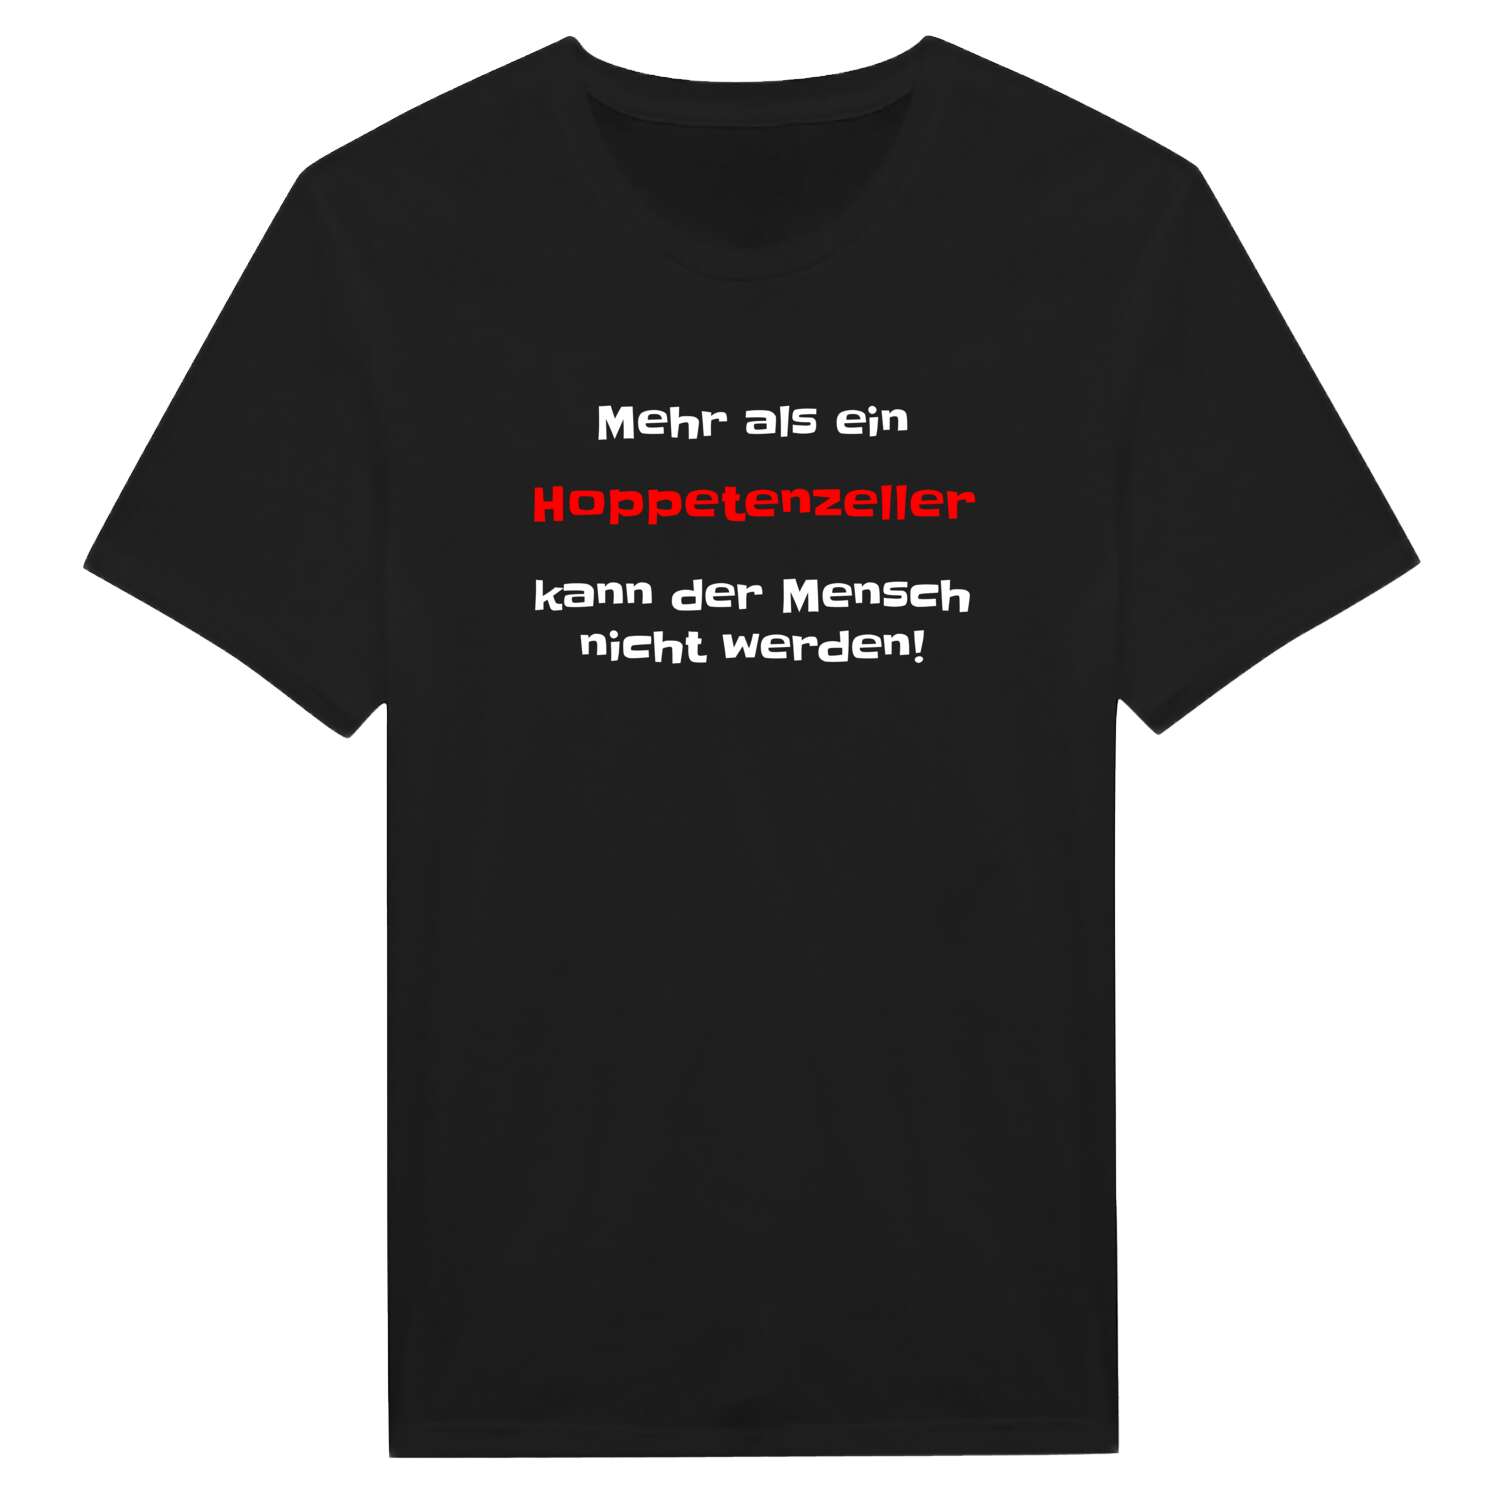 Hoppetenzell T-Shirt »Mehr als ein«